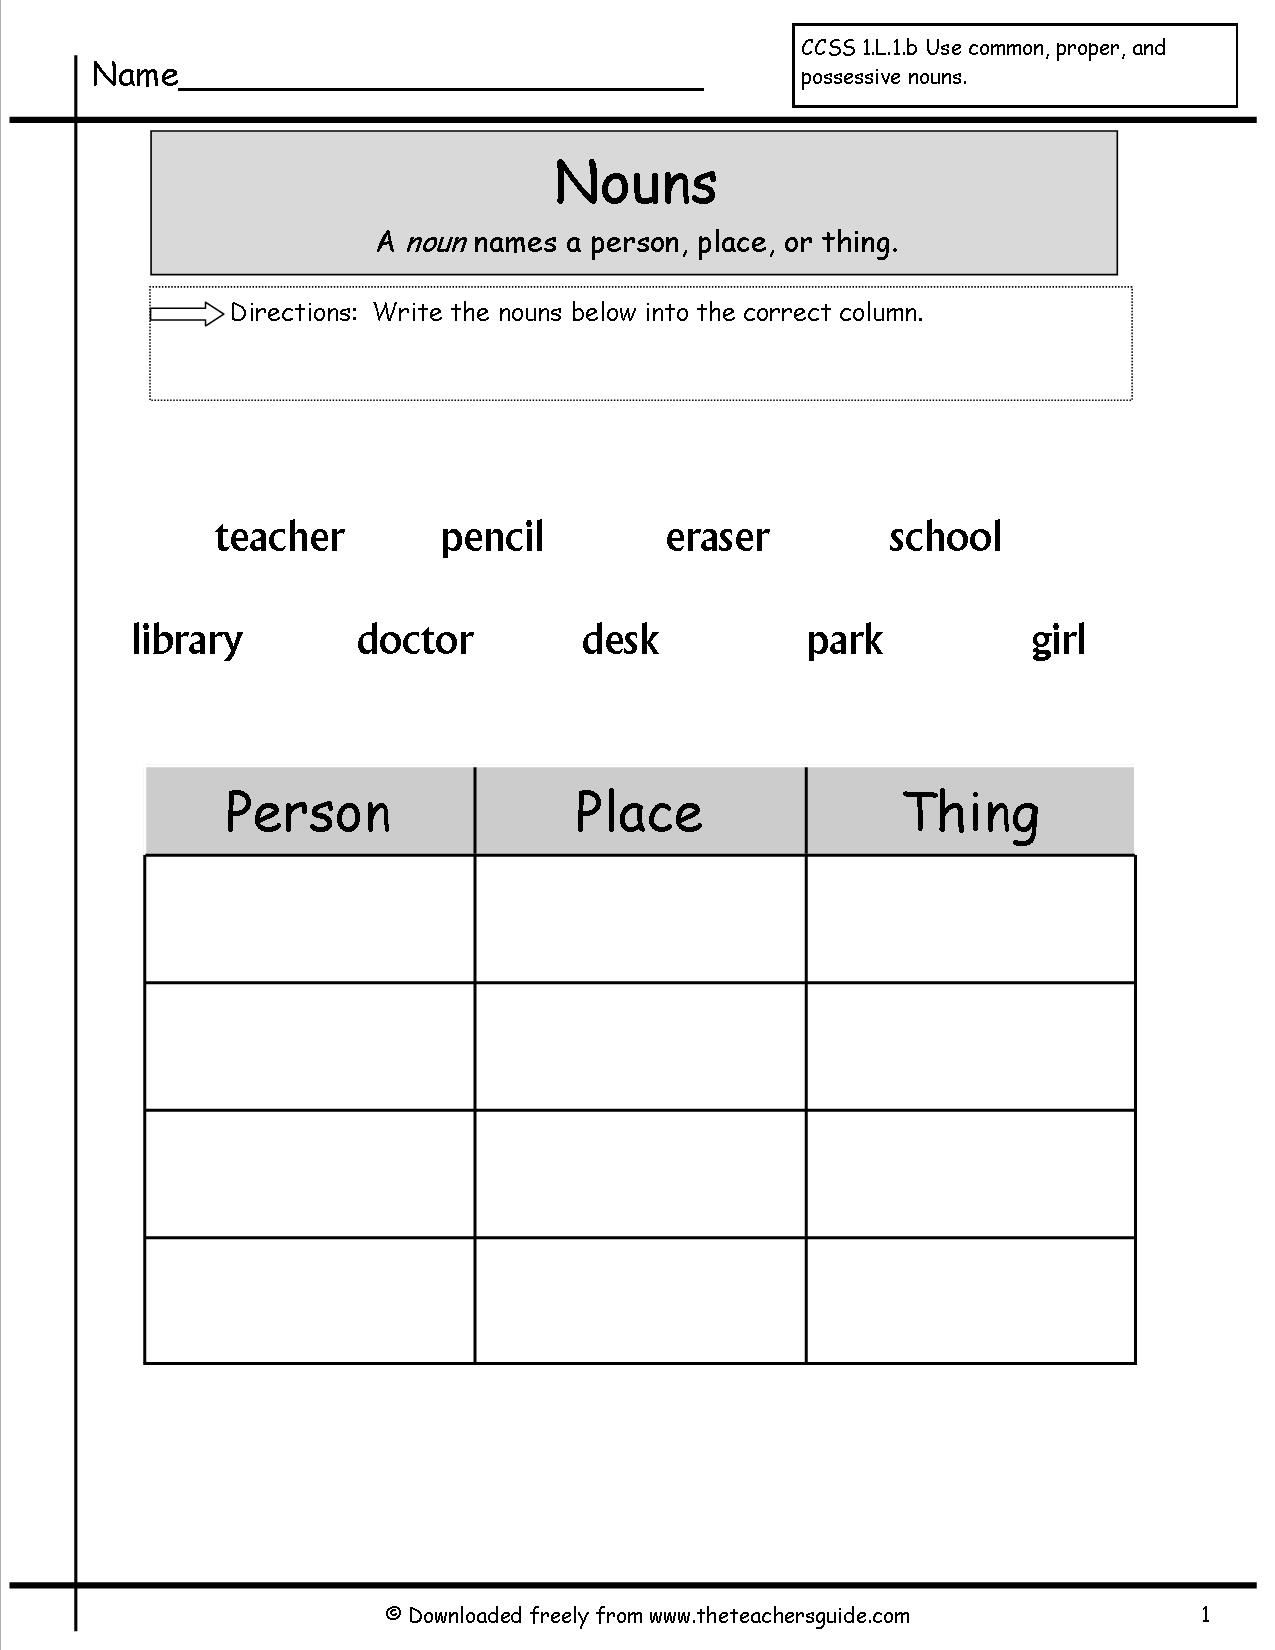 worksheet for grade 1 grammar grammer printables nouns worksheets nouns worksheets grade worksheet 1 for grammar 